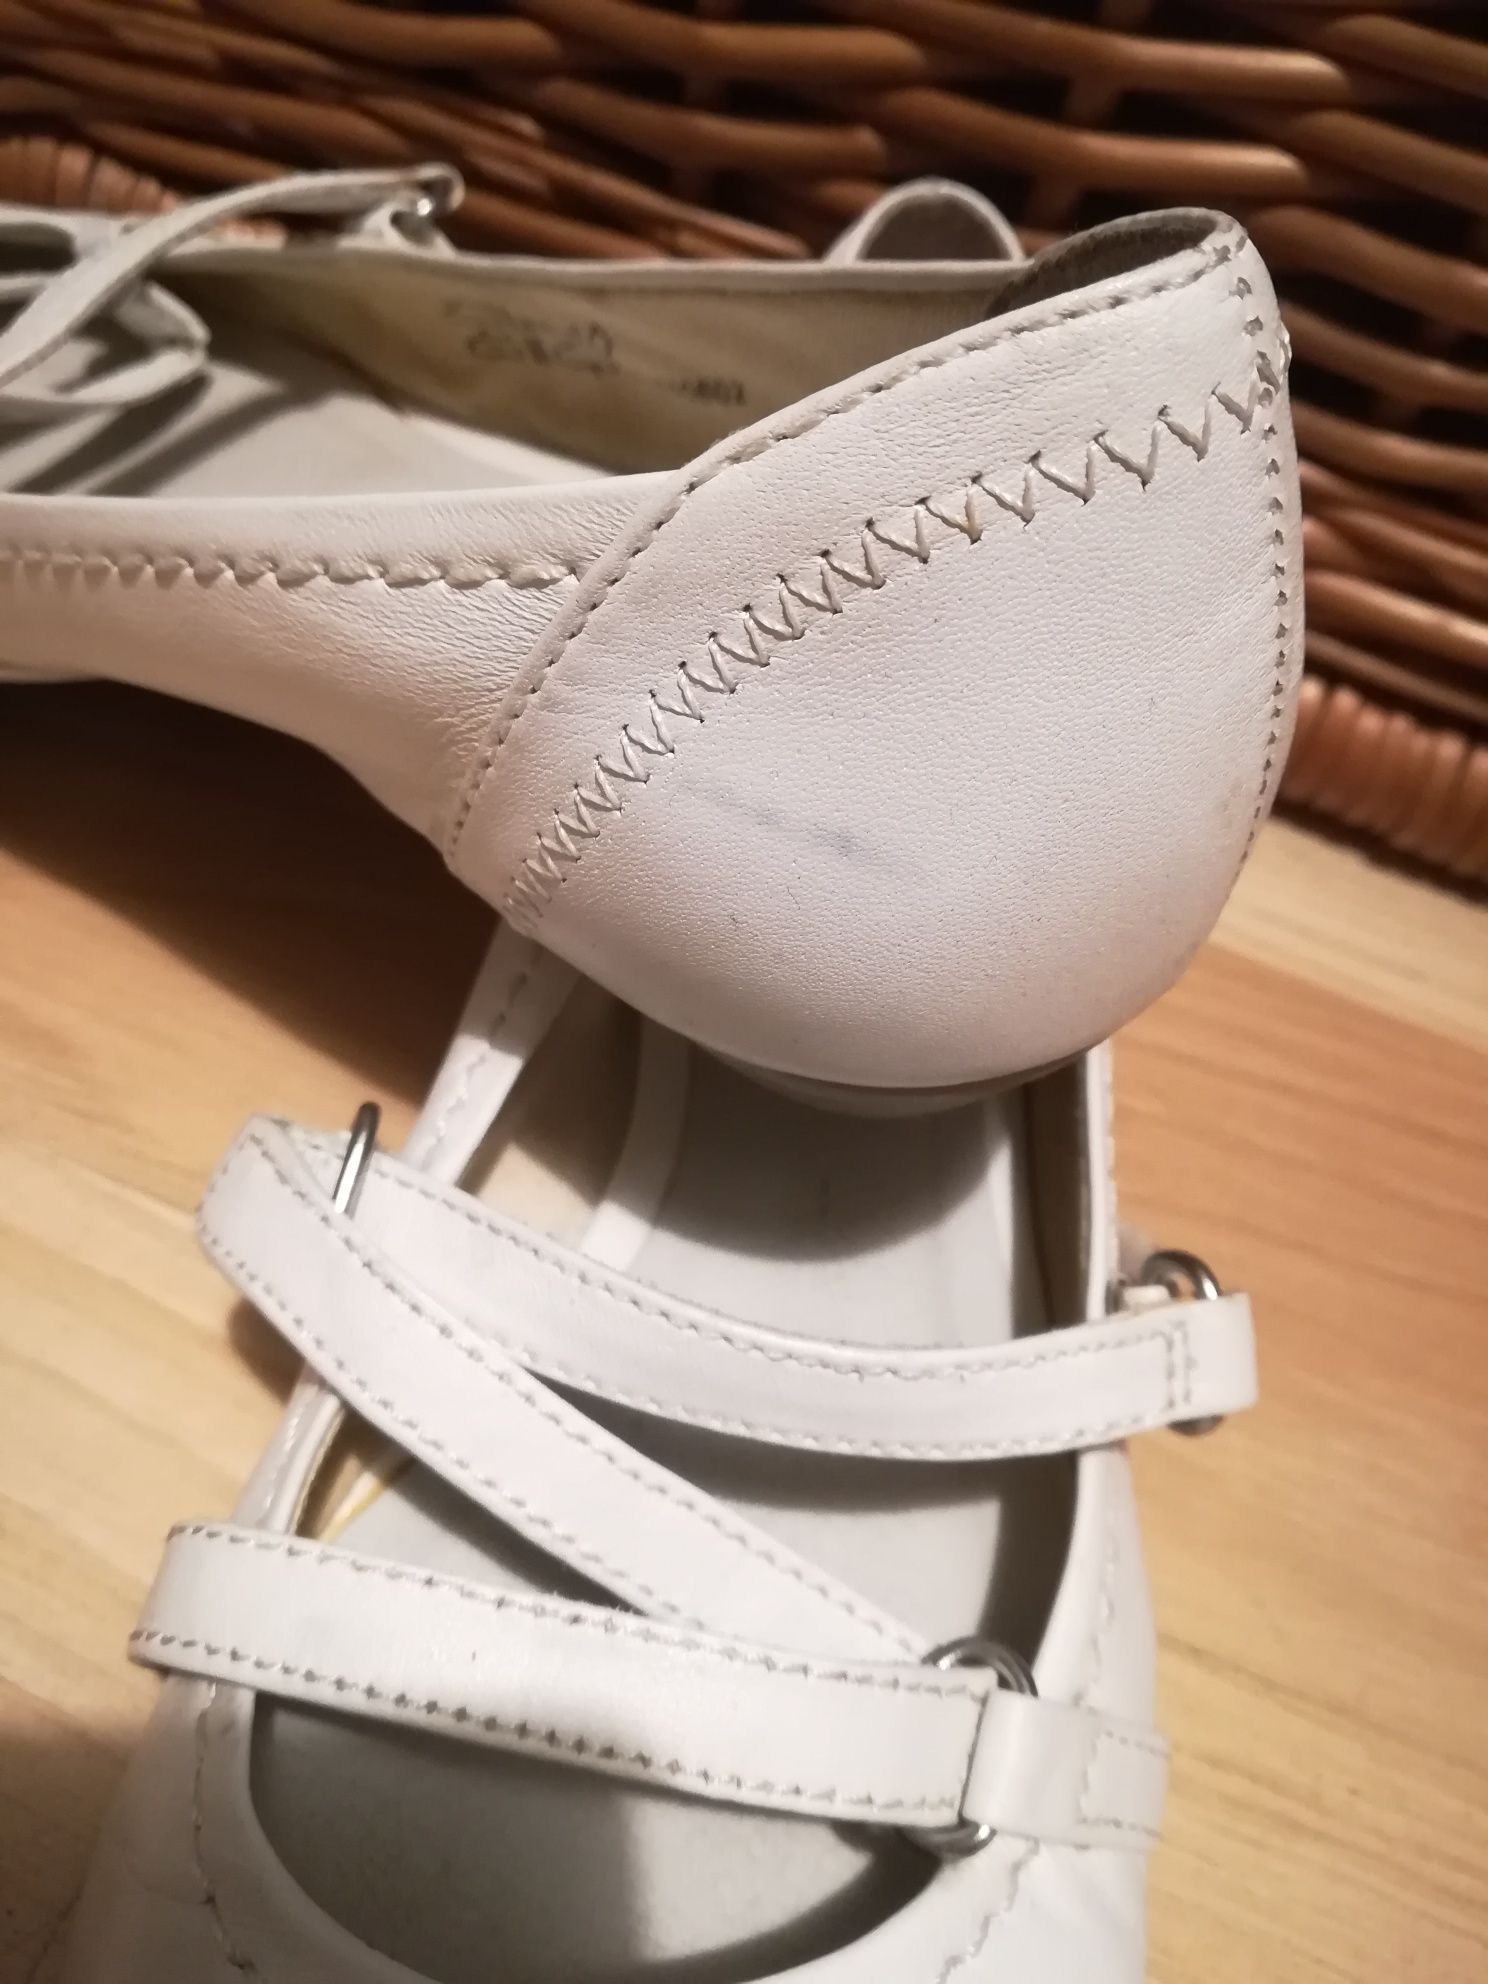 Białe buty, baleriny na rzepy, skóra naturalna r. 36